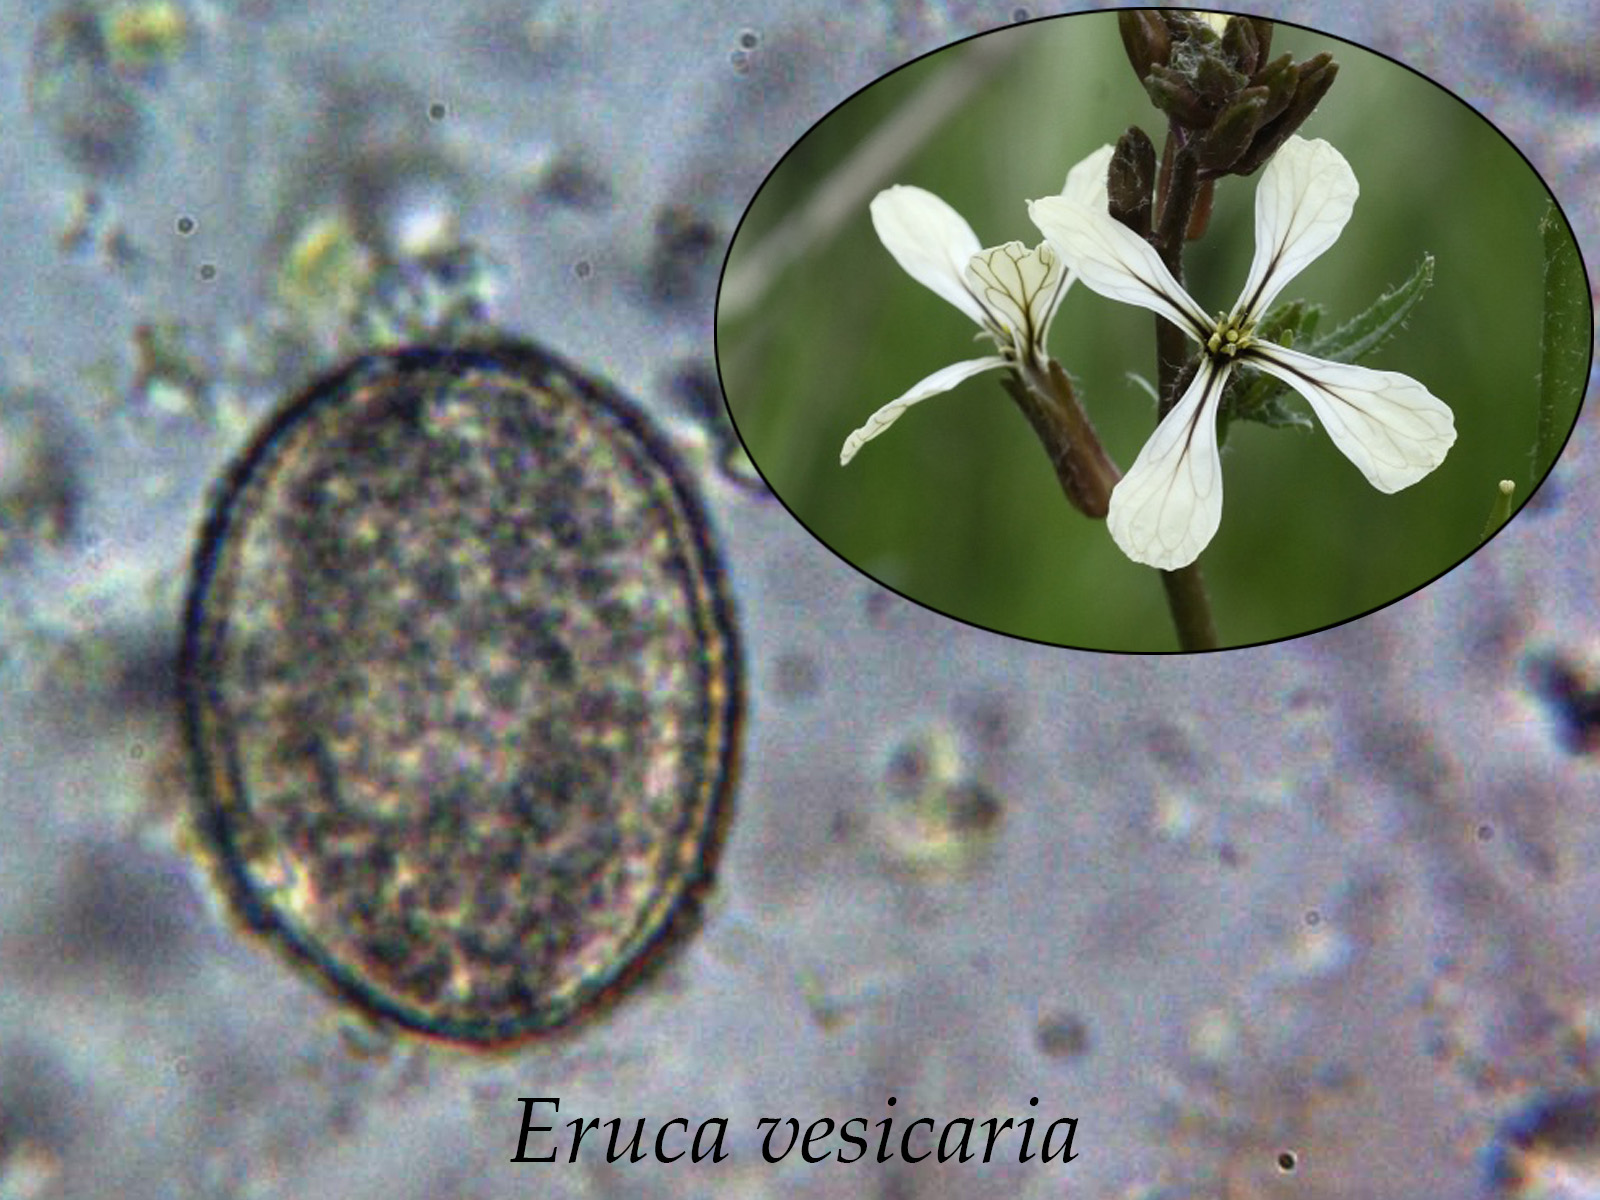 Erucavesicaria.jpg